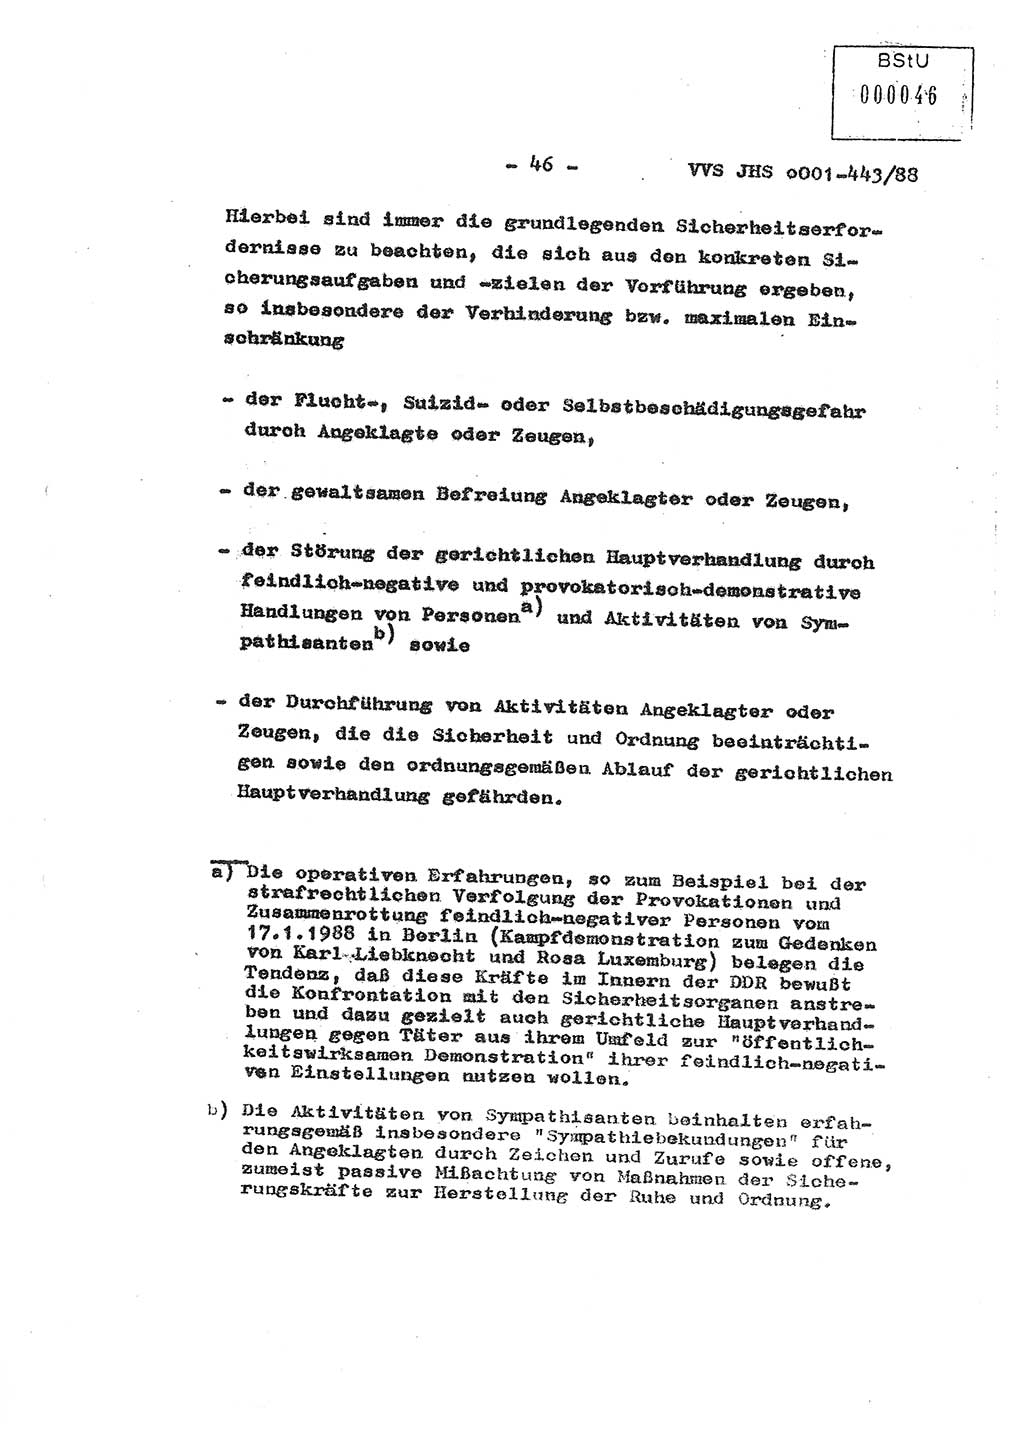 Diplomarbeit Hauptmann Michael Rast (Abt. ⅩⅣ), Major Bernd Rahaus (Abt. ⅩⅣ), Ministerium für Staatssicherheit (MfS) [Deutsche Demokratische Republik (DDR)], Juristische Hochschule (JHS), Vertrauliche Verschlußsache (VVS) o001-443/88, Potsdam 1988, Seite 46 (Dipl.-Arb. MfS DDR JHS VVS o001-443/88 1988, S. 46)